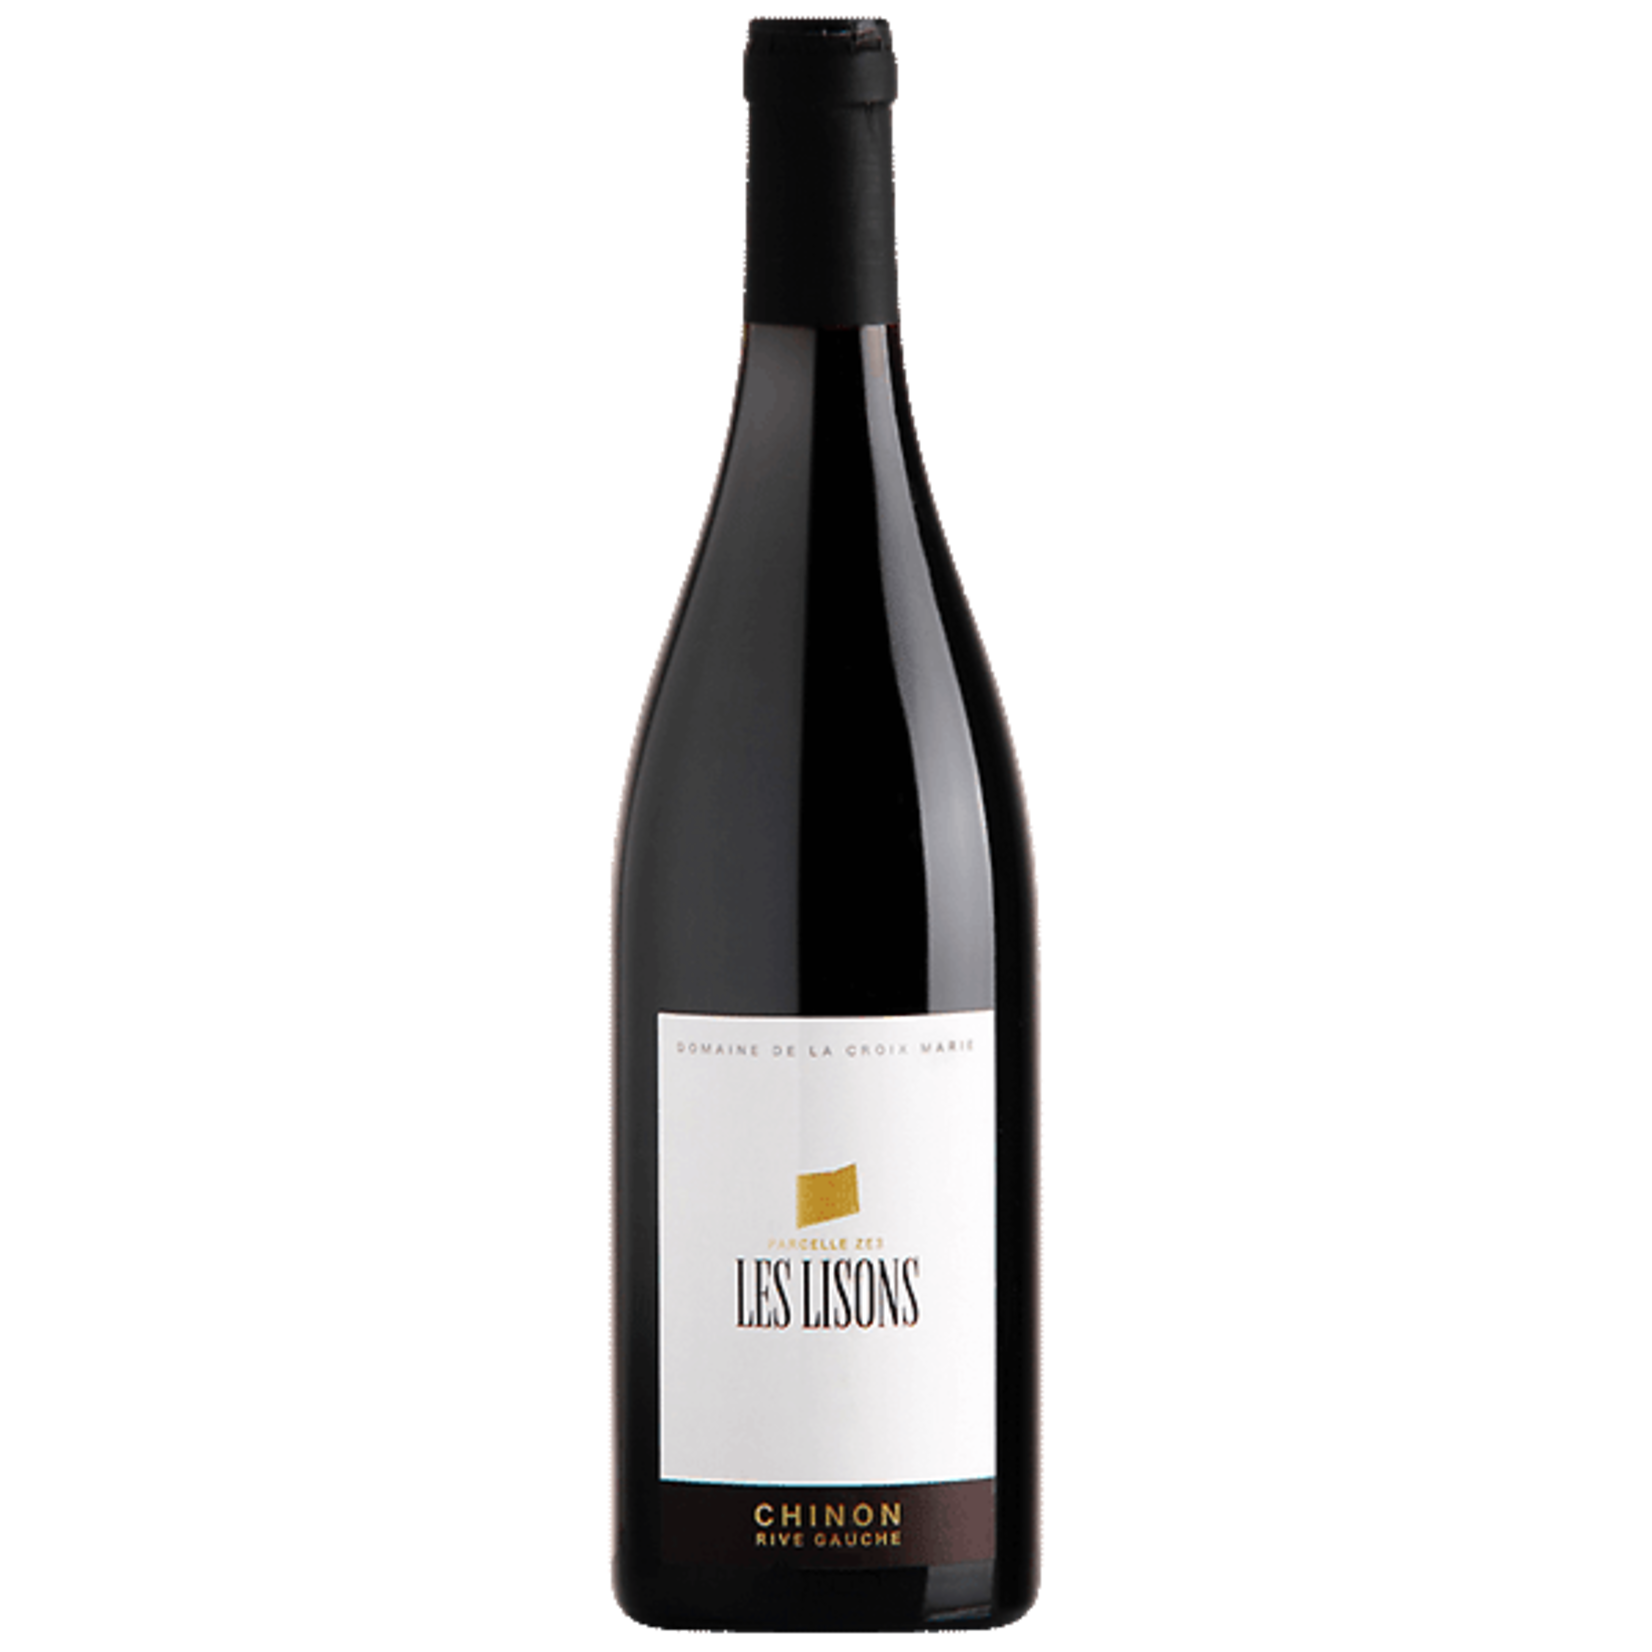 Wine Domaine de La Croix Marie Chinon Rive Gauche Les Lisons